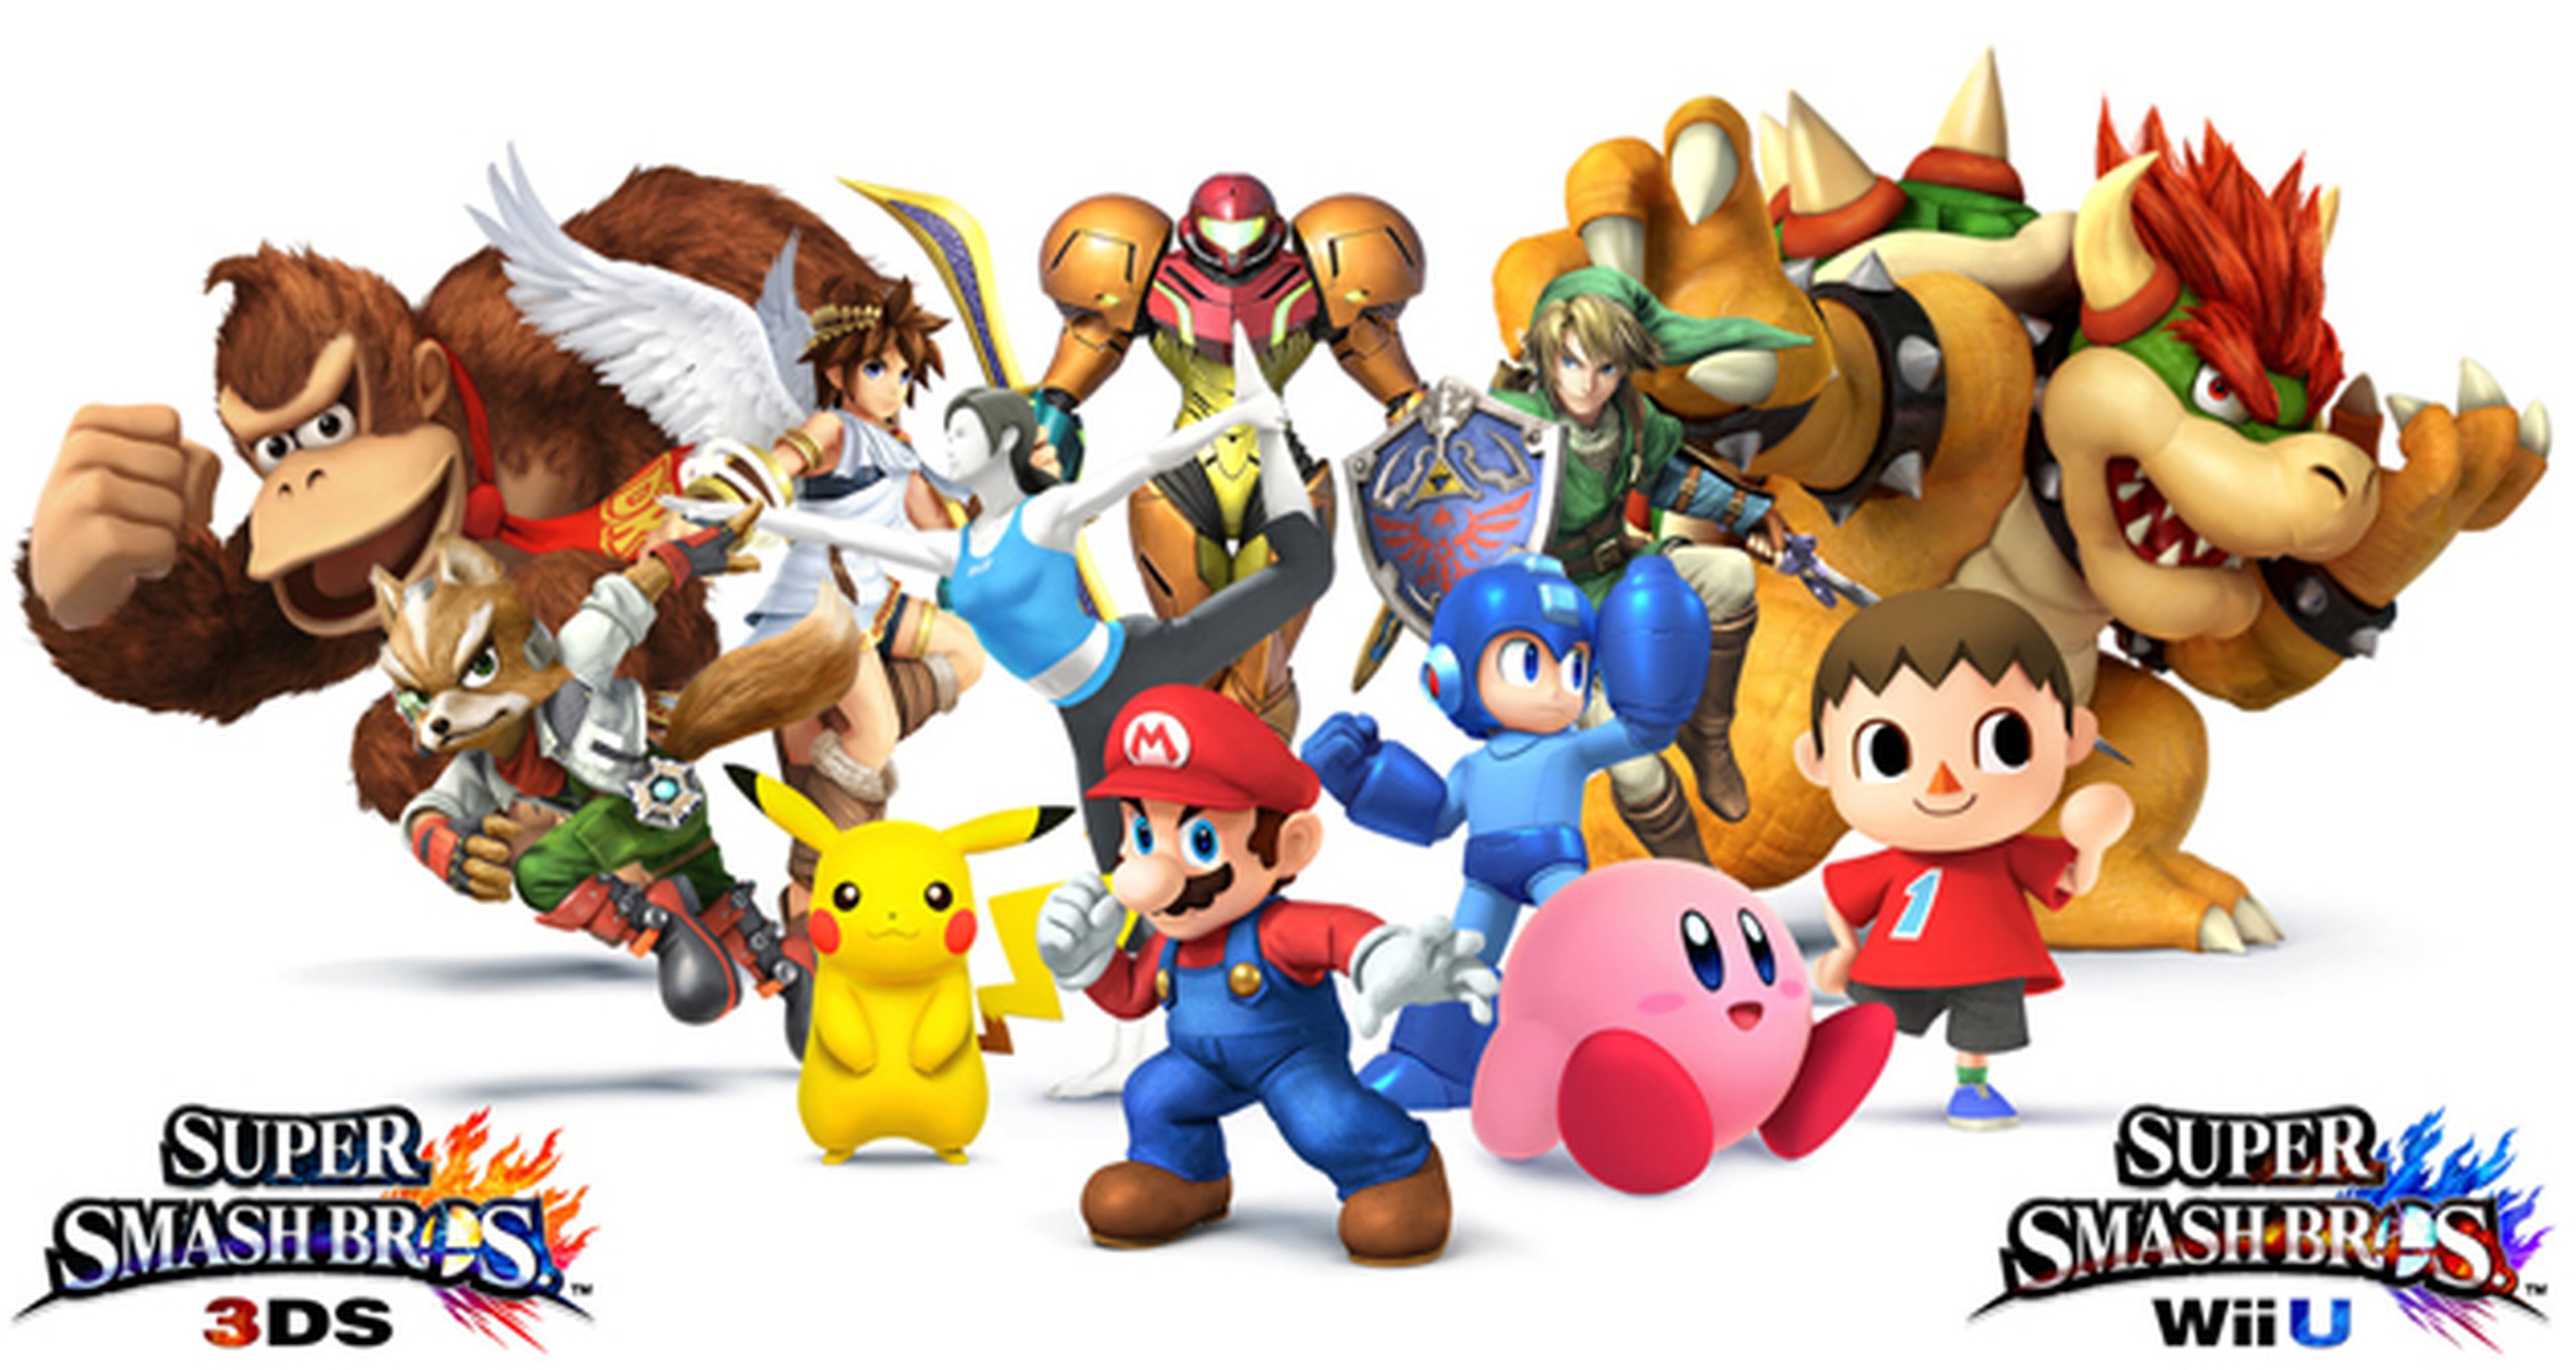 Oferta exclusiva con la reserva de Super Smash Bros. para 3DS y Wii U en Game